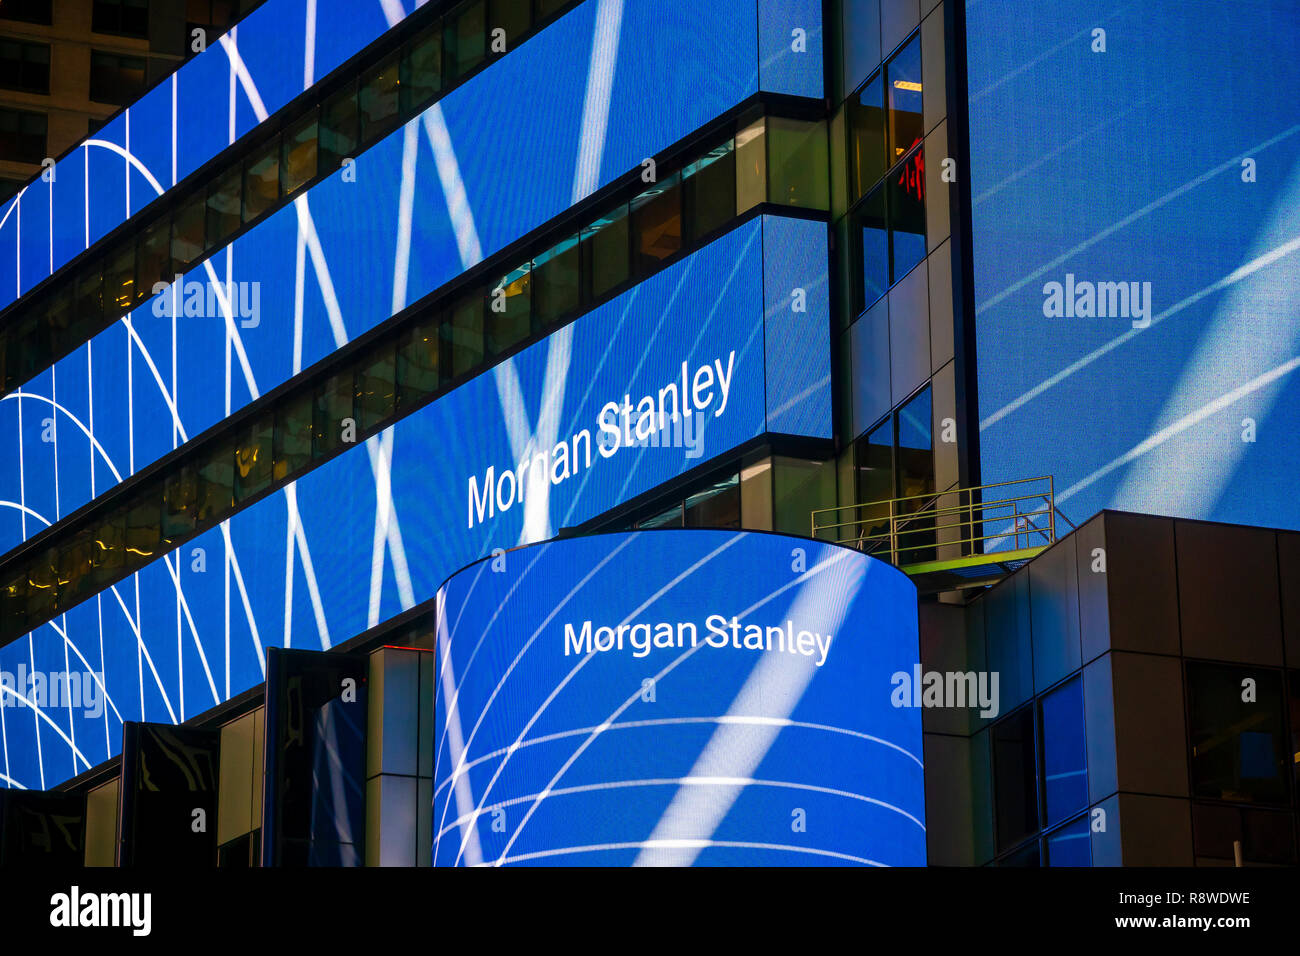 New York,NY/USA-Le 12 décembre 2018, Morgan Stanley s'engage dans l'auto-promotion sur l'affichage numérique sur leurs capacités à New York le Mardi, Décembre 12, 2018. (Â© Richard B. Levine) Banque D'Images